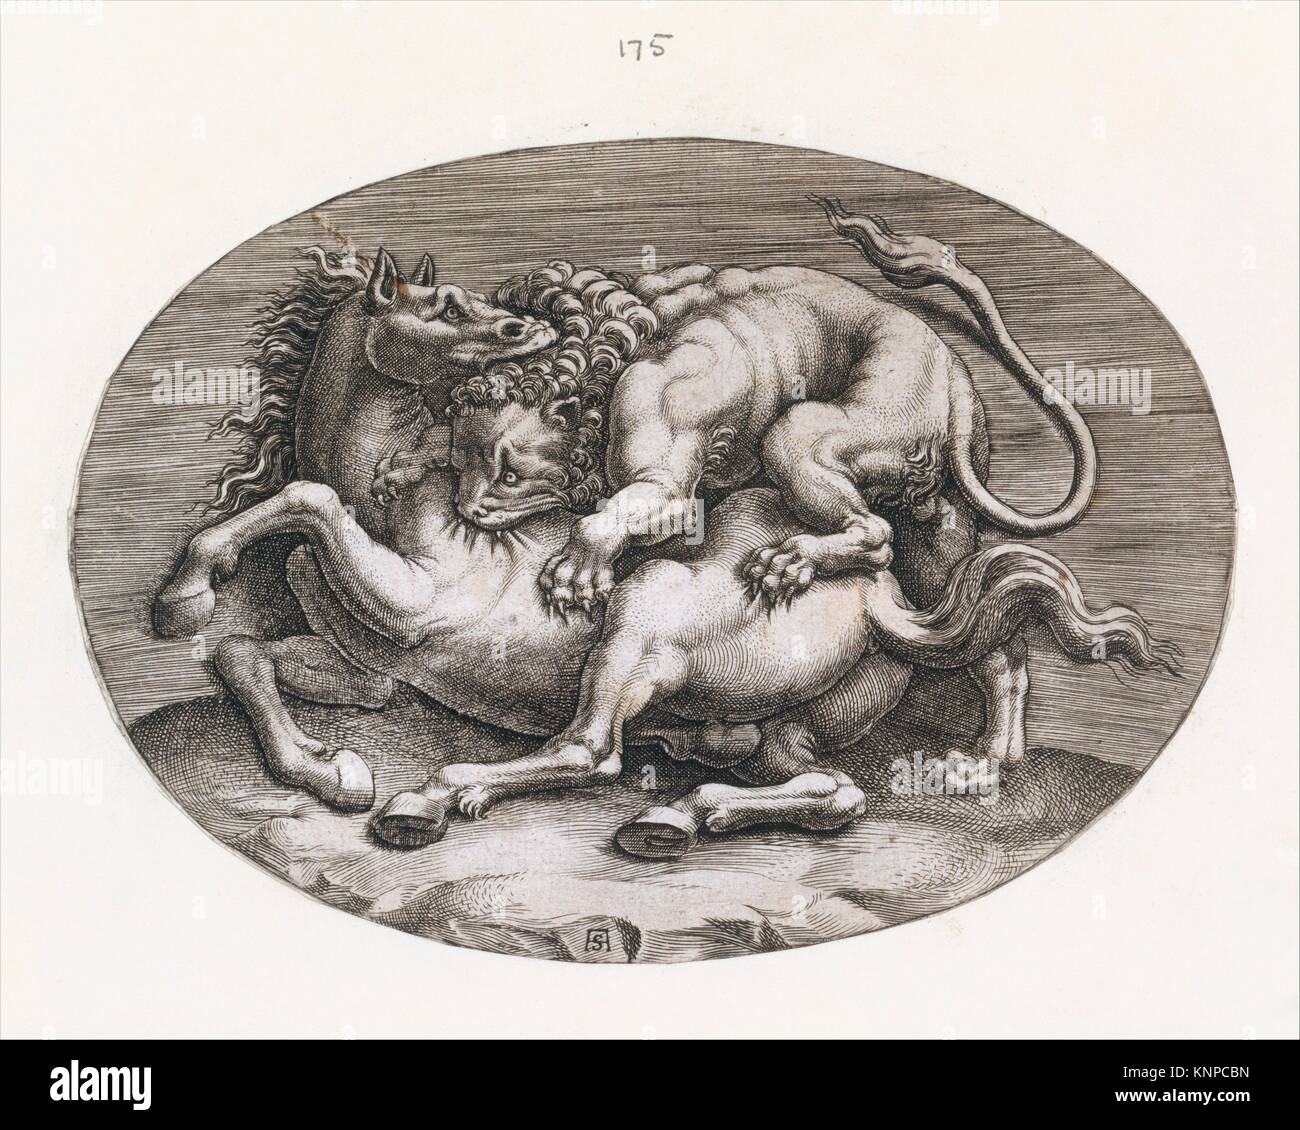 Speculum Romanae Magnificentiae: león atacando a un caballo. Series/Cartera: Speculum Romanae Magnificentiae; Artista: Adamo (Scultori Ghisi) (italiano, Foto de stock